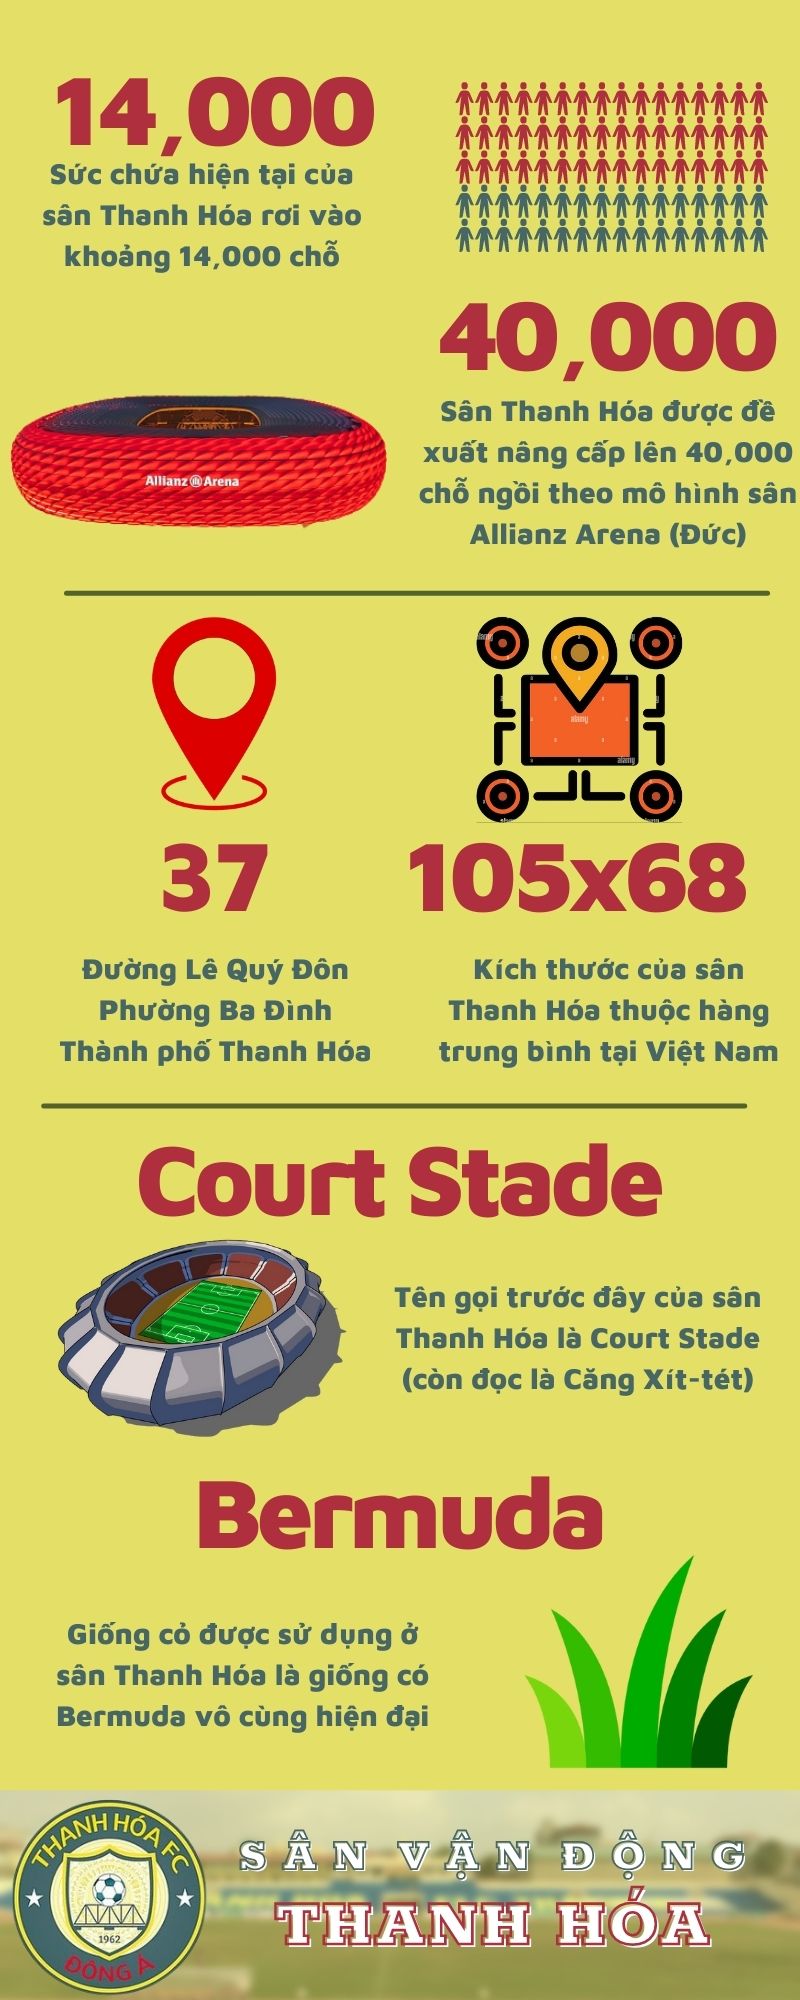 Sân vận động Thanh Hóa - Sức nóng từ khán đài - Vé Bóng Đá Online